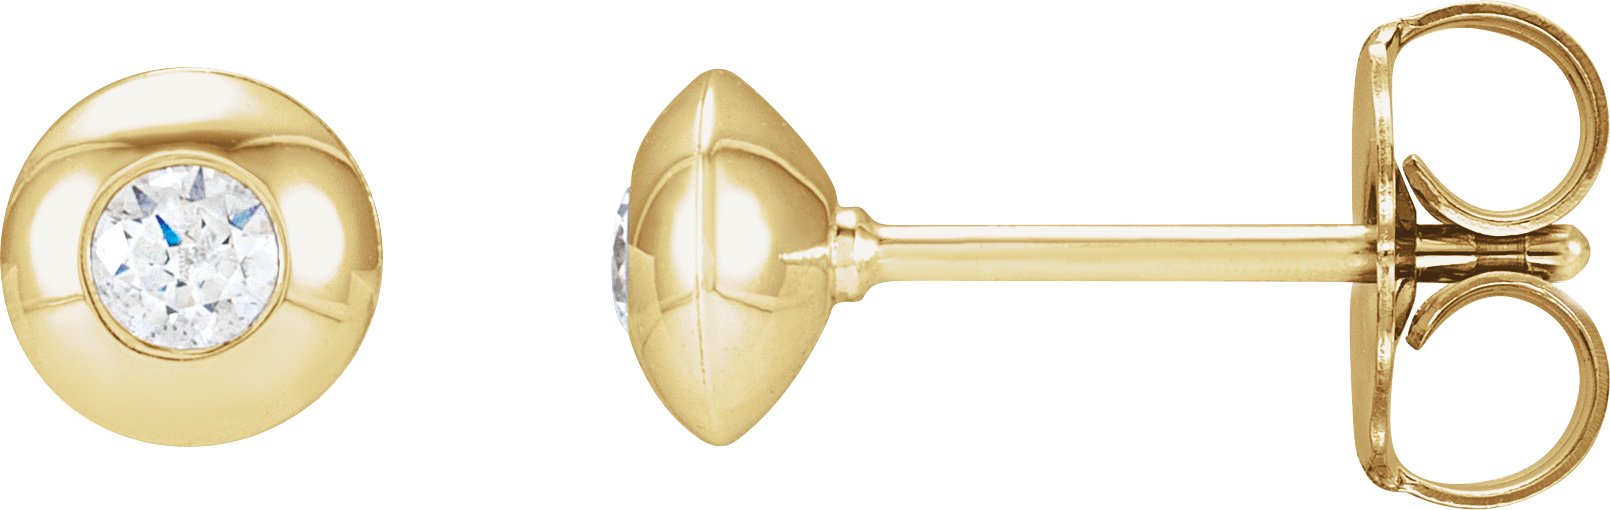 14K Yellow 1/8 CTW Natural Diamond Domed Bezel-Set Earrings